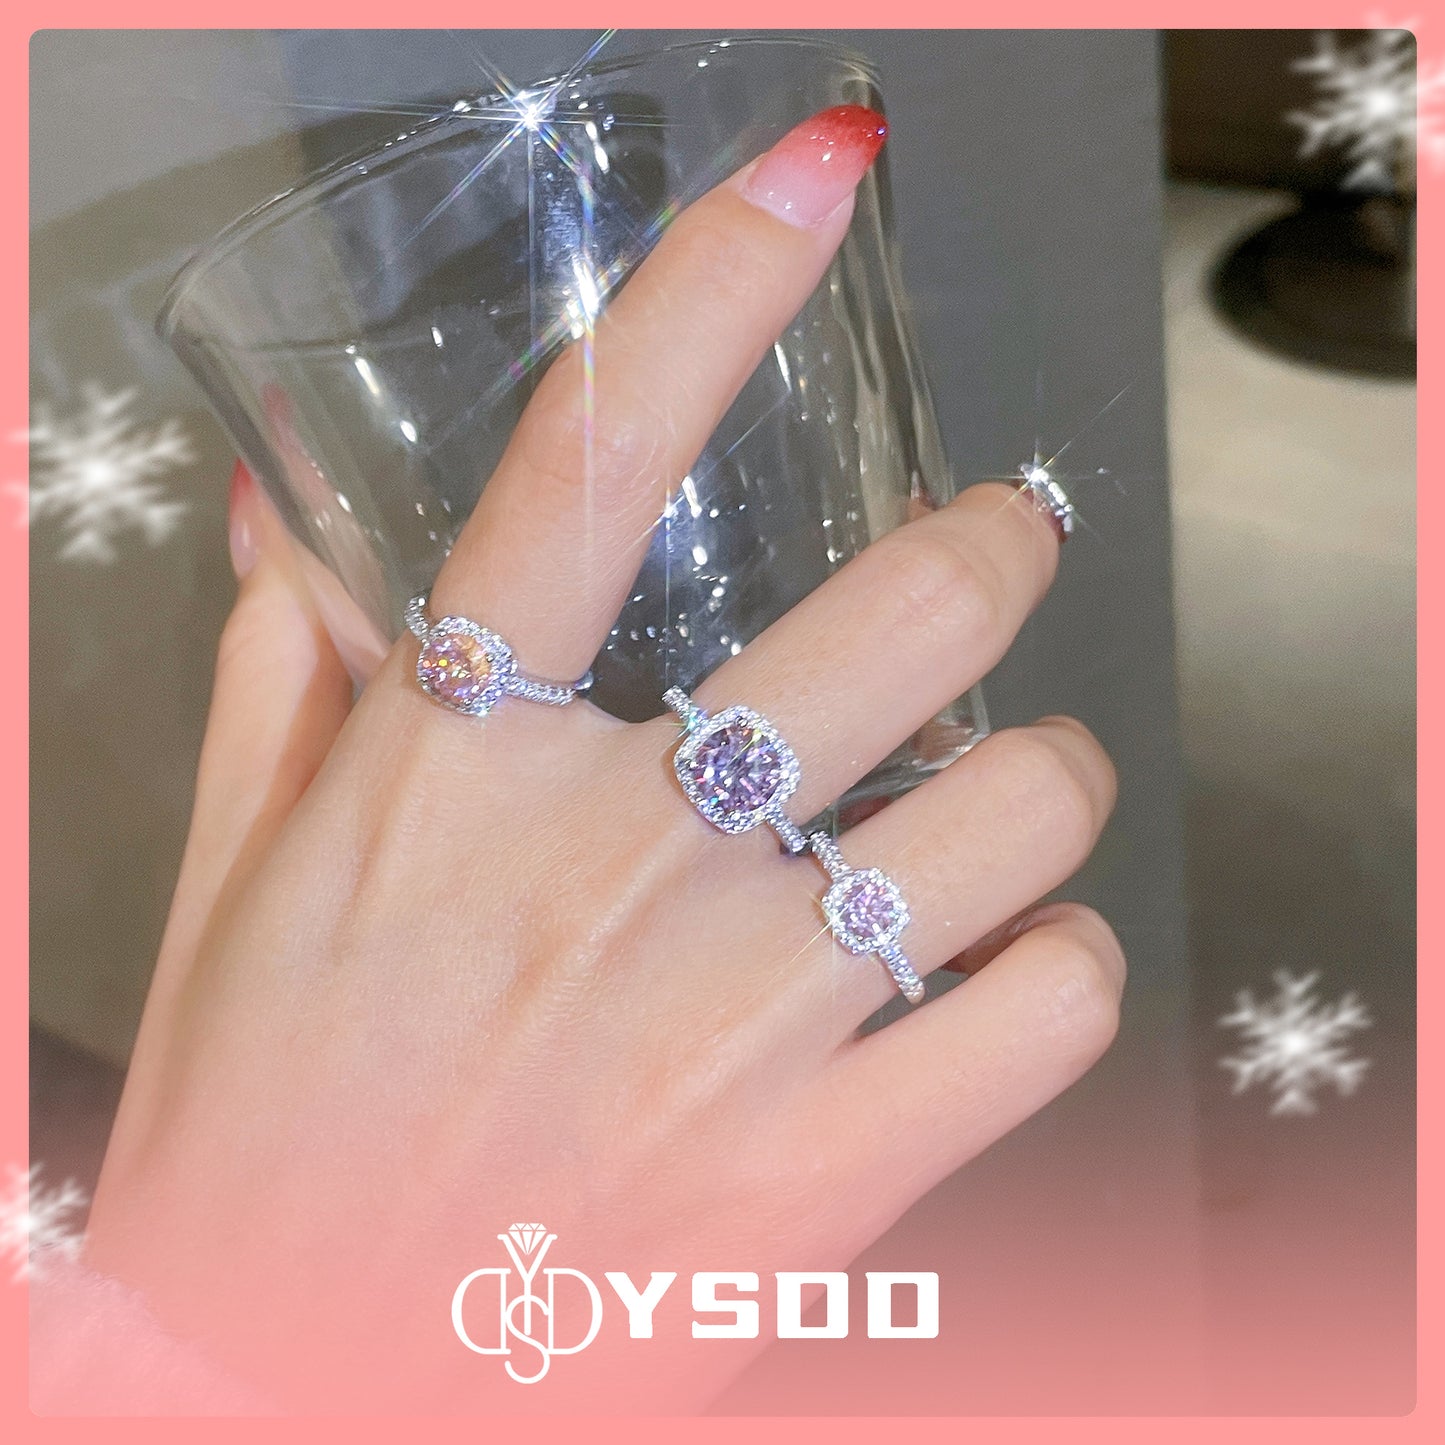 【#120 Buy 1 Get 1】1CT Sakura Pink Moissanite Ring Set in s925